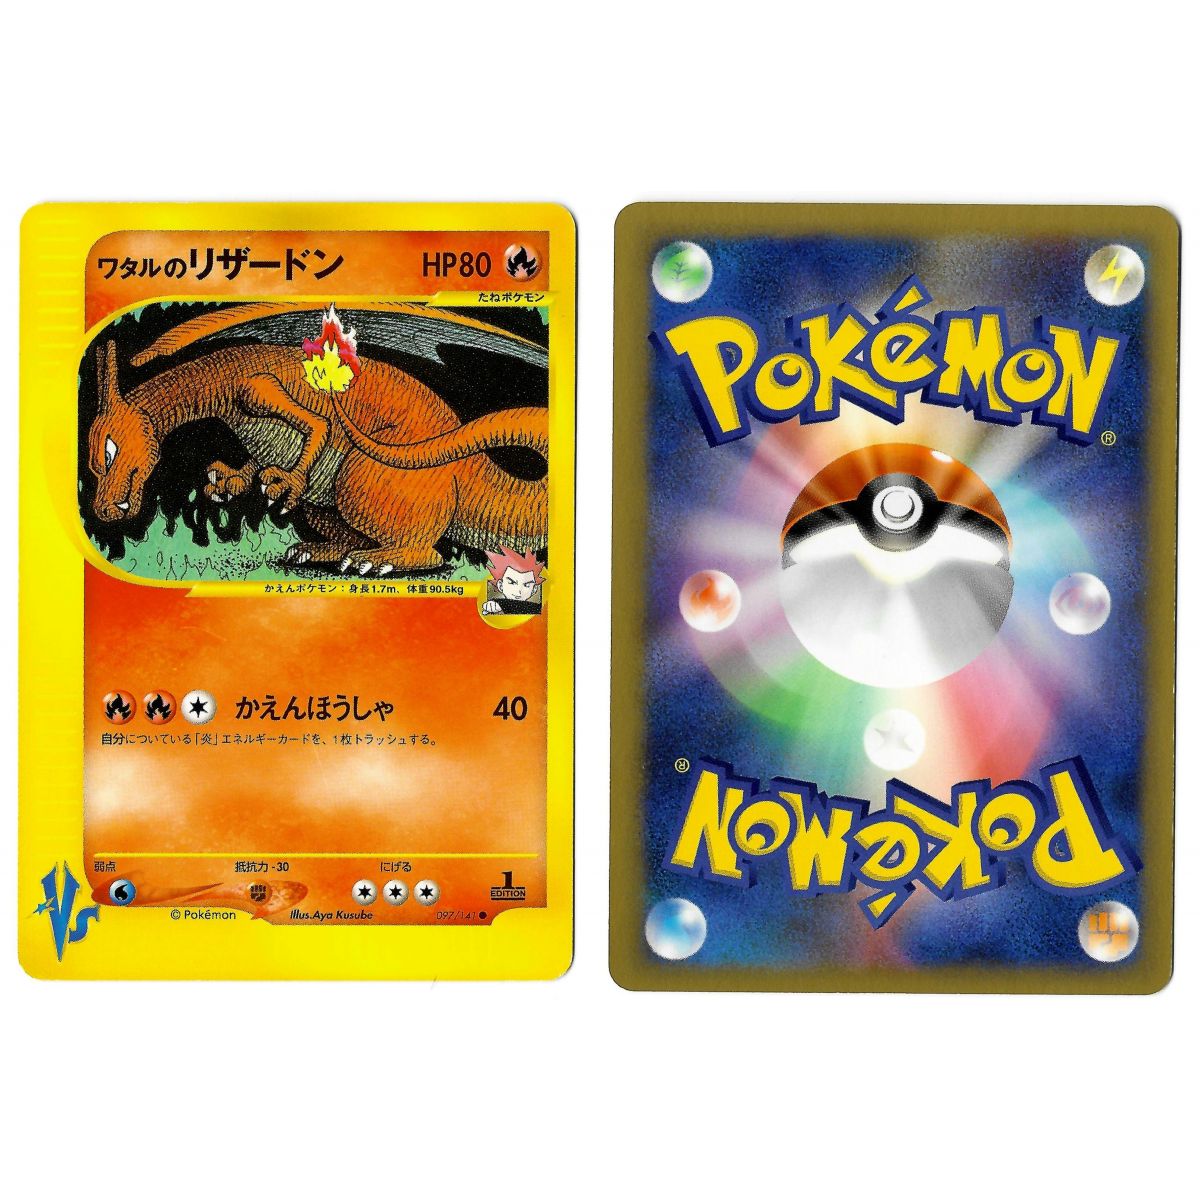 Item Lance's Charizard 097/141 Pokémon Card★VS VS Commune 1st Edition Japonais Near Mint